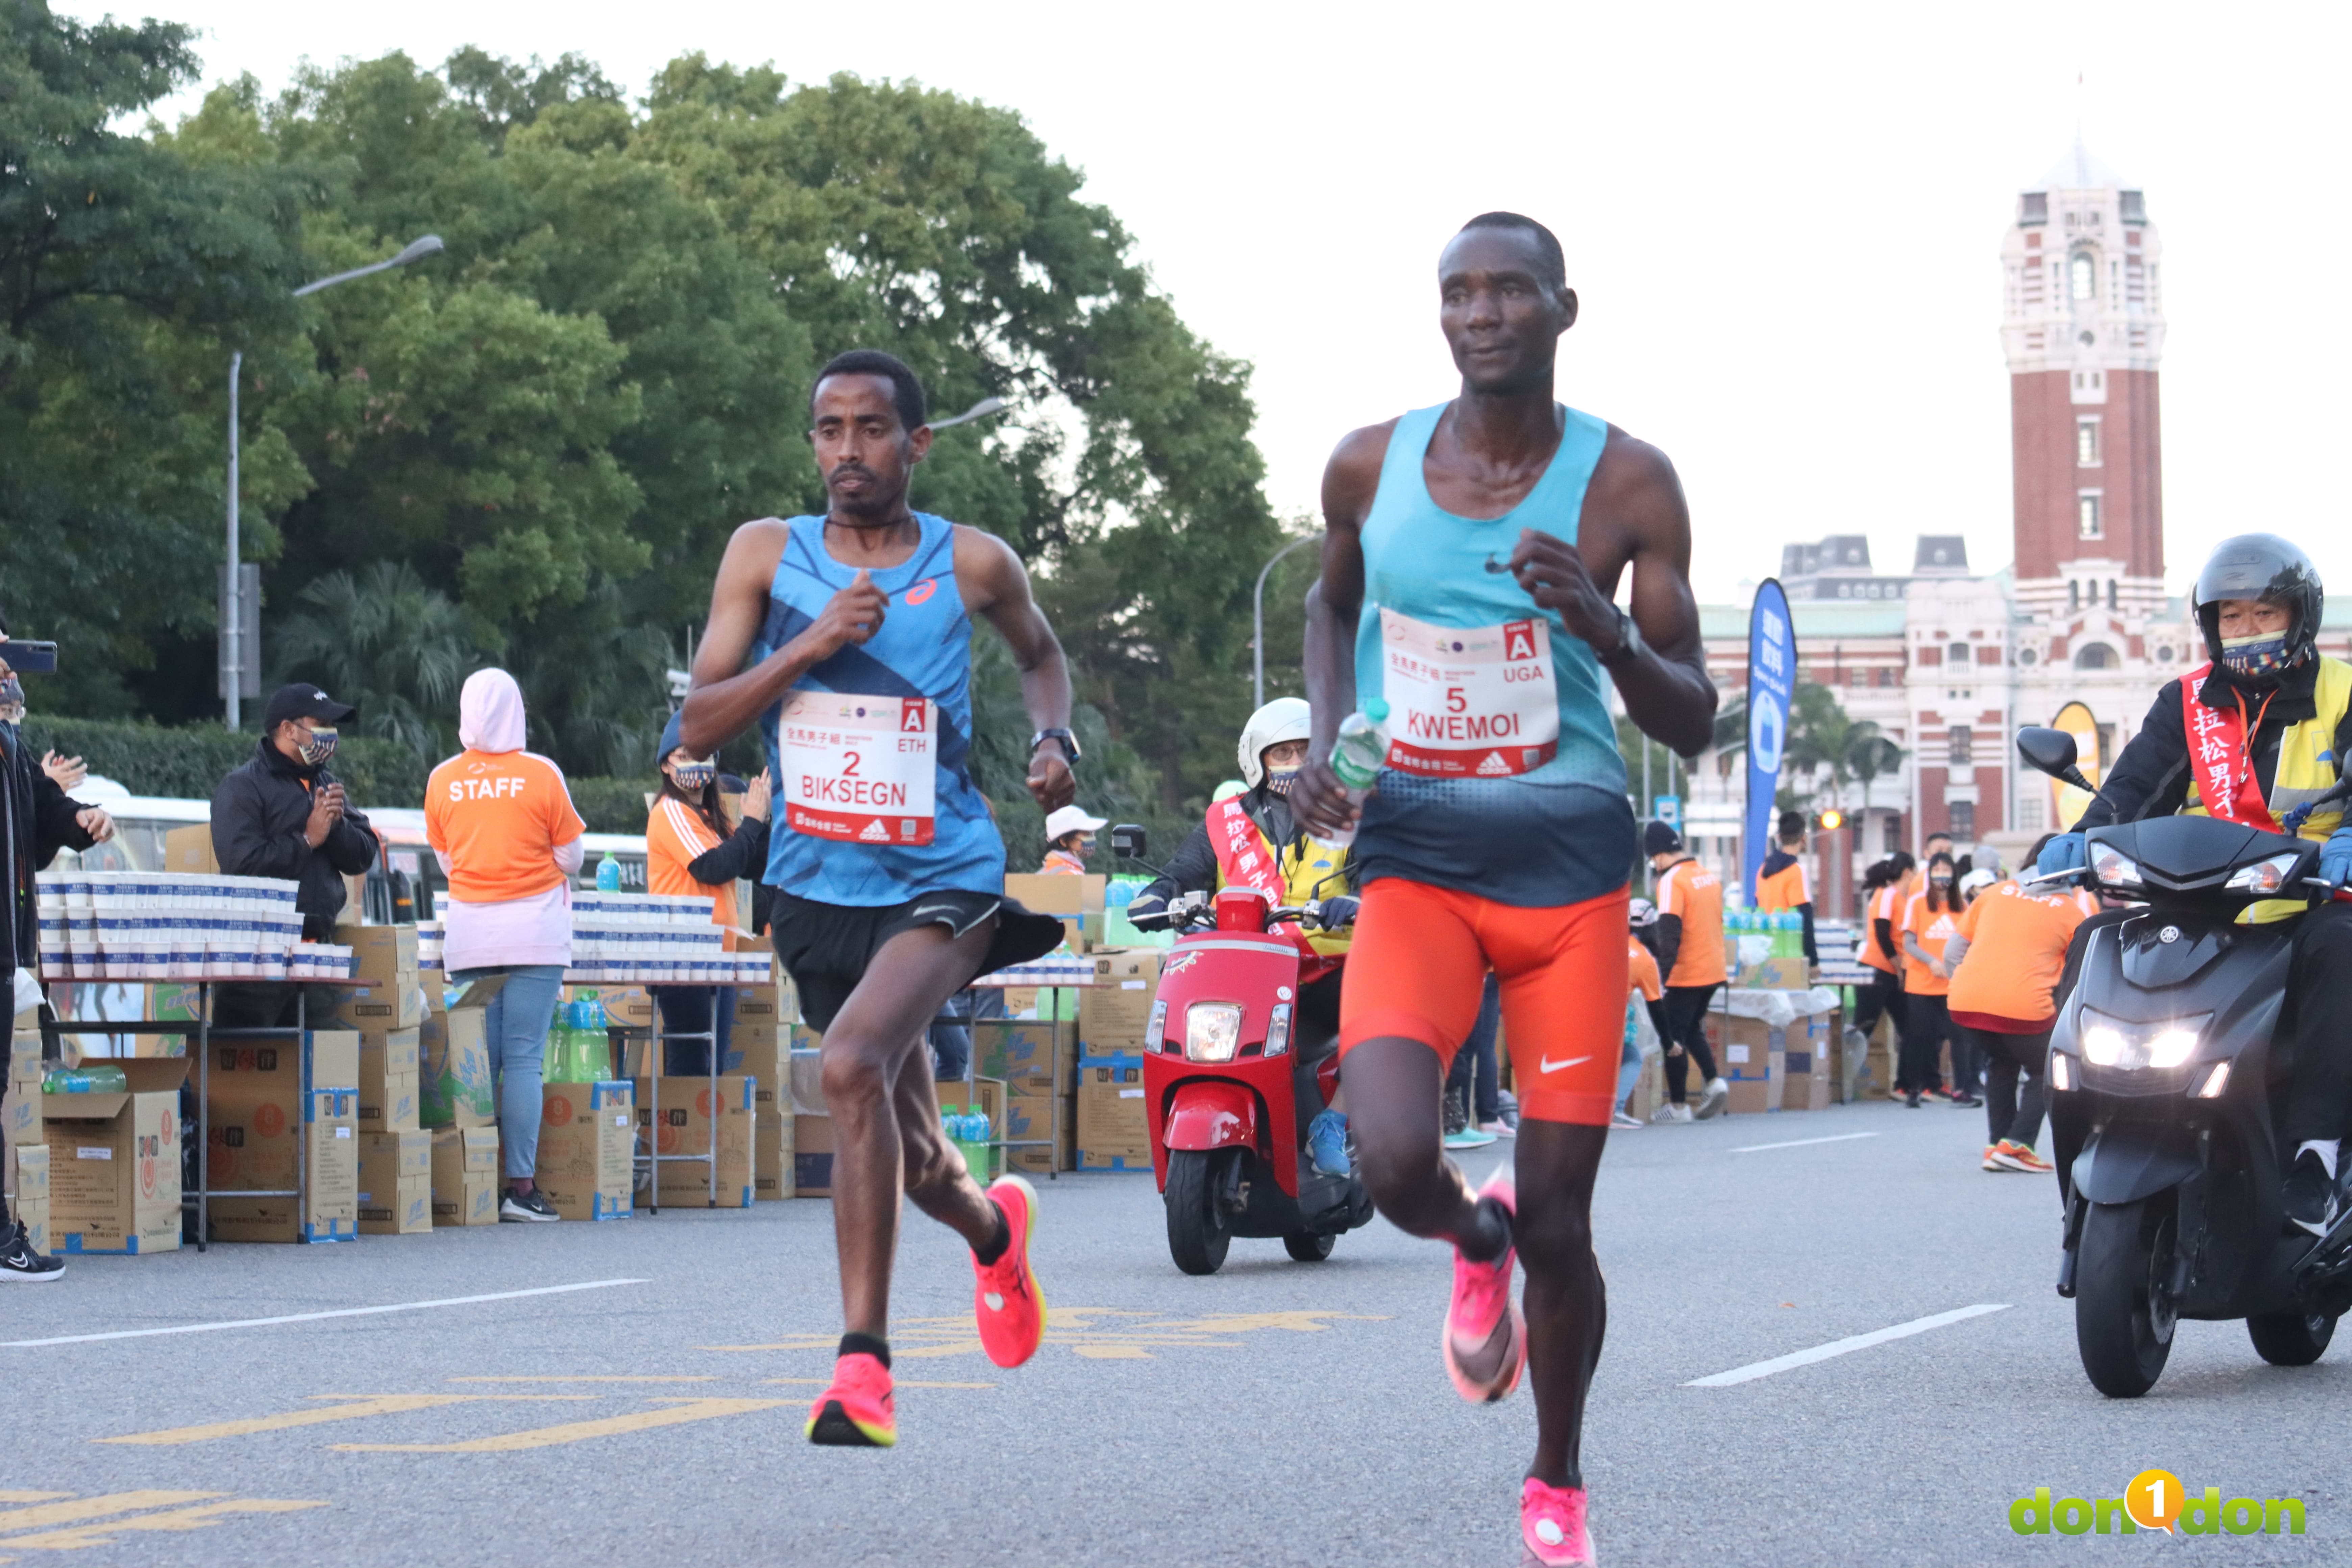 男子總冠軍得主 Demeke Kasaw BIKSEGN(#2)在 10 公里時僅排名第 5 位